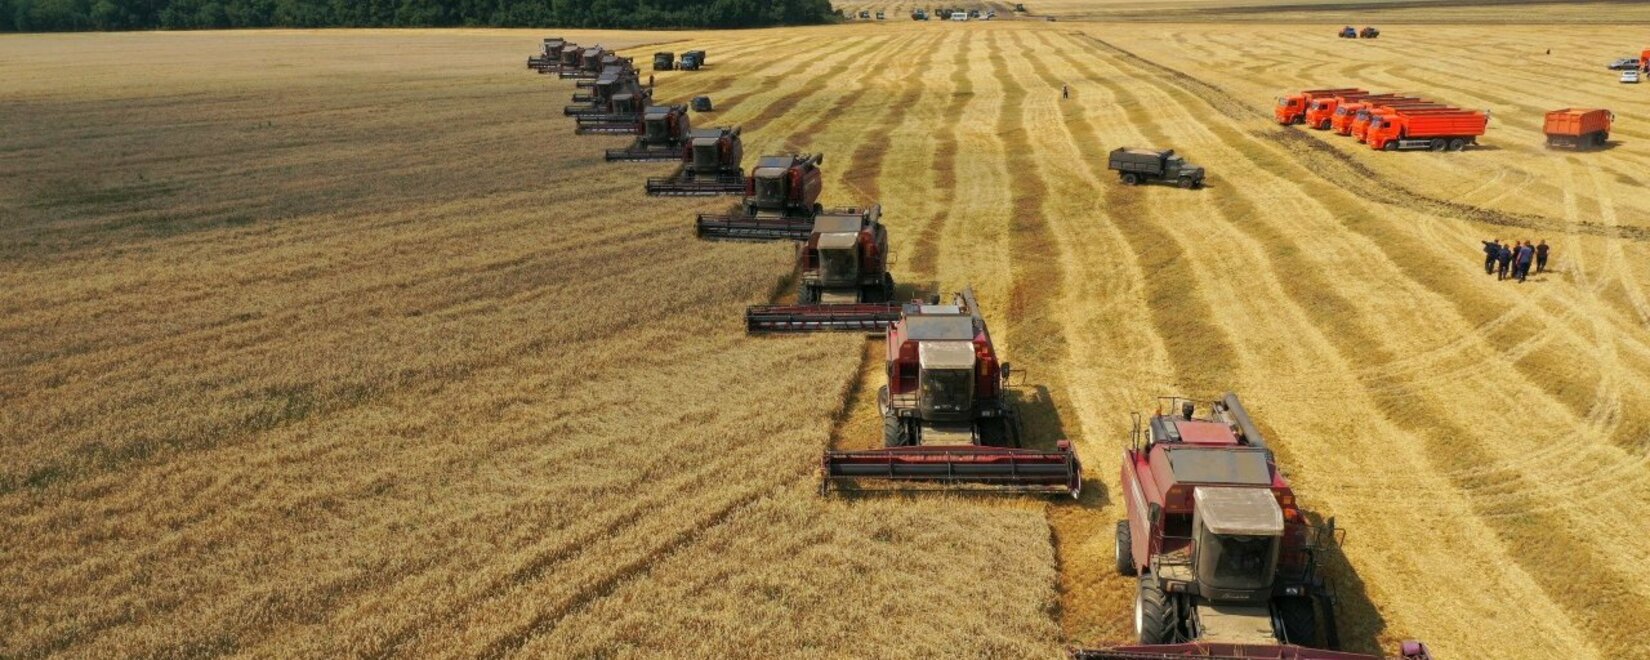 Мировой рынок зерна: цены на пшеницу выросли в пятницу, на сою и кукурузу упали в Чикаго